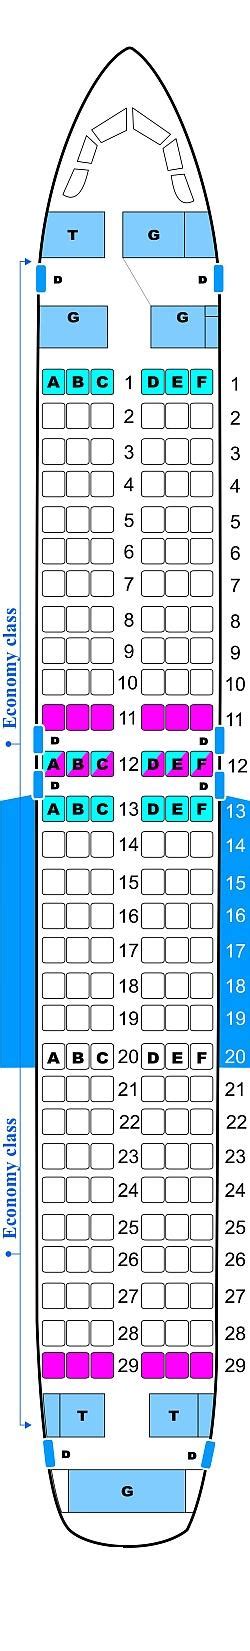 Plan De Cabine Hello Airlines Airbus A320 214 Seatmaestrofr